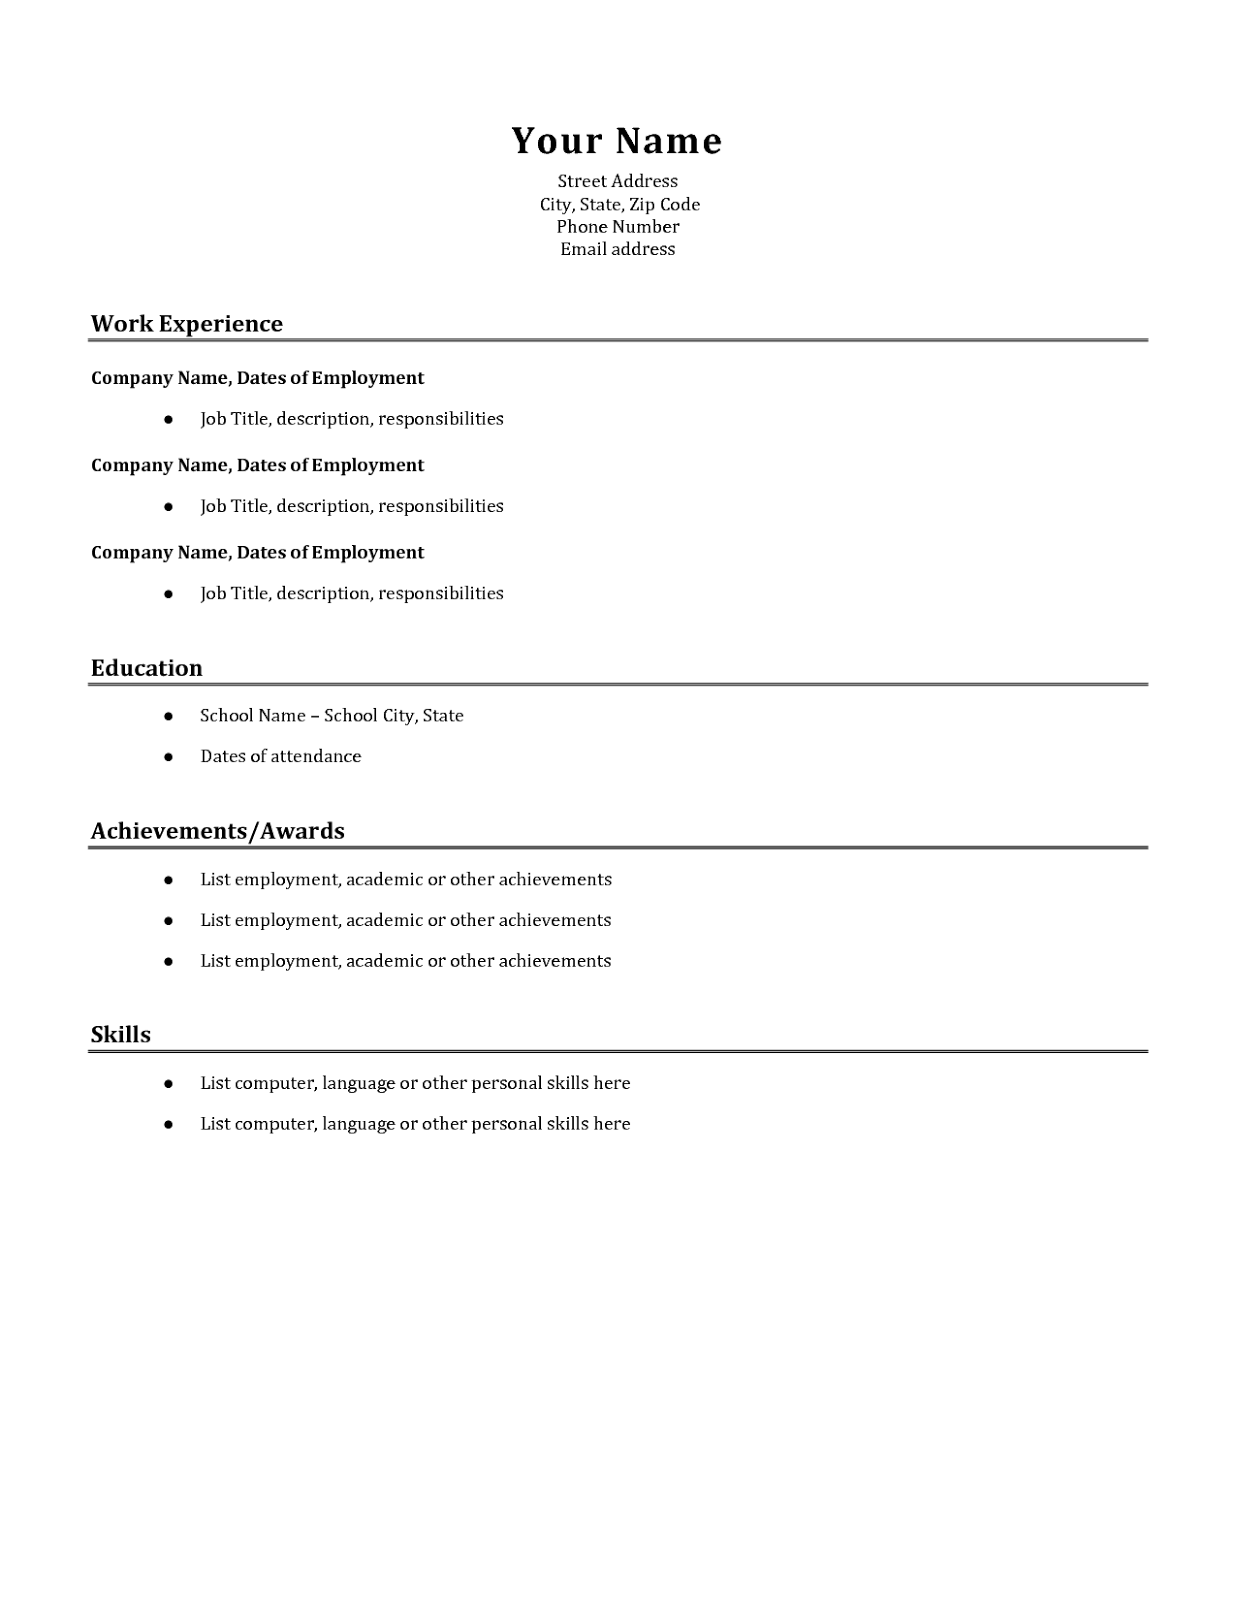 Basic resume layout